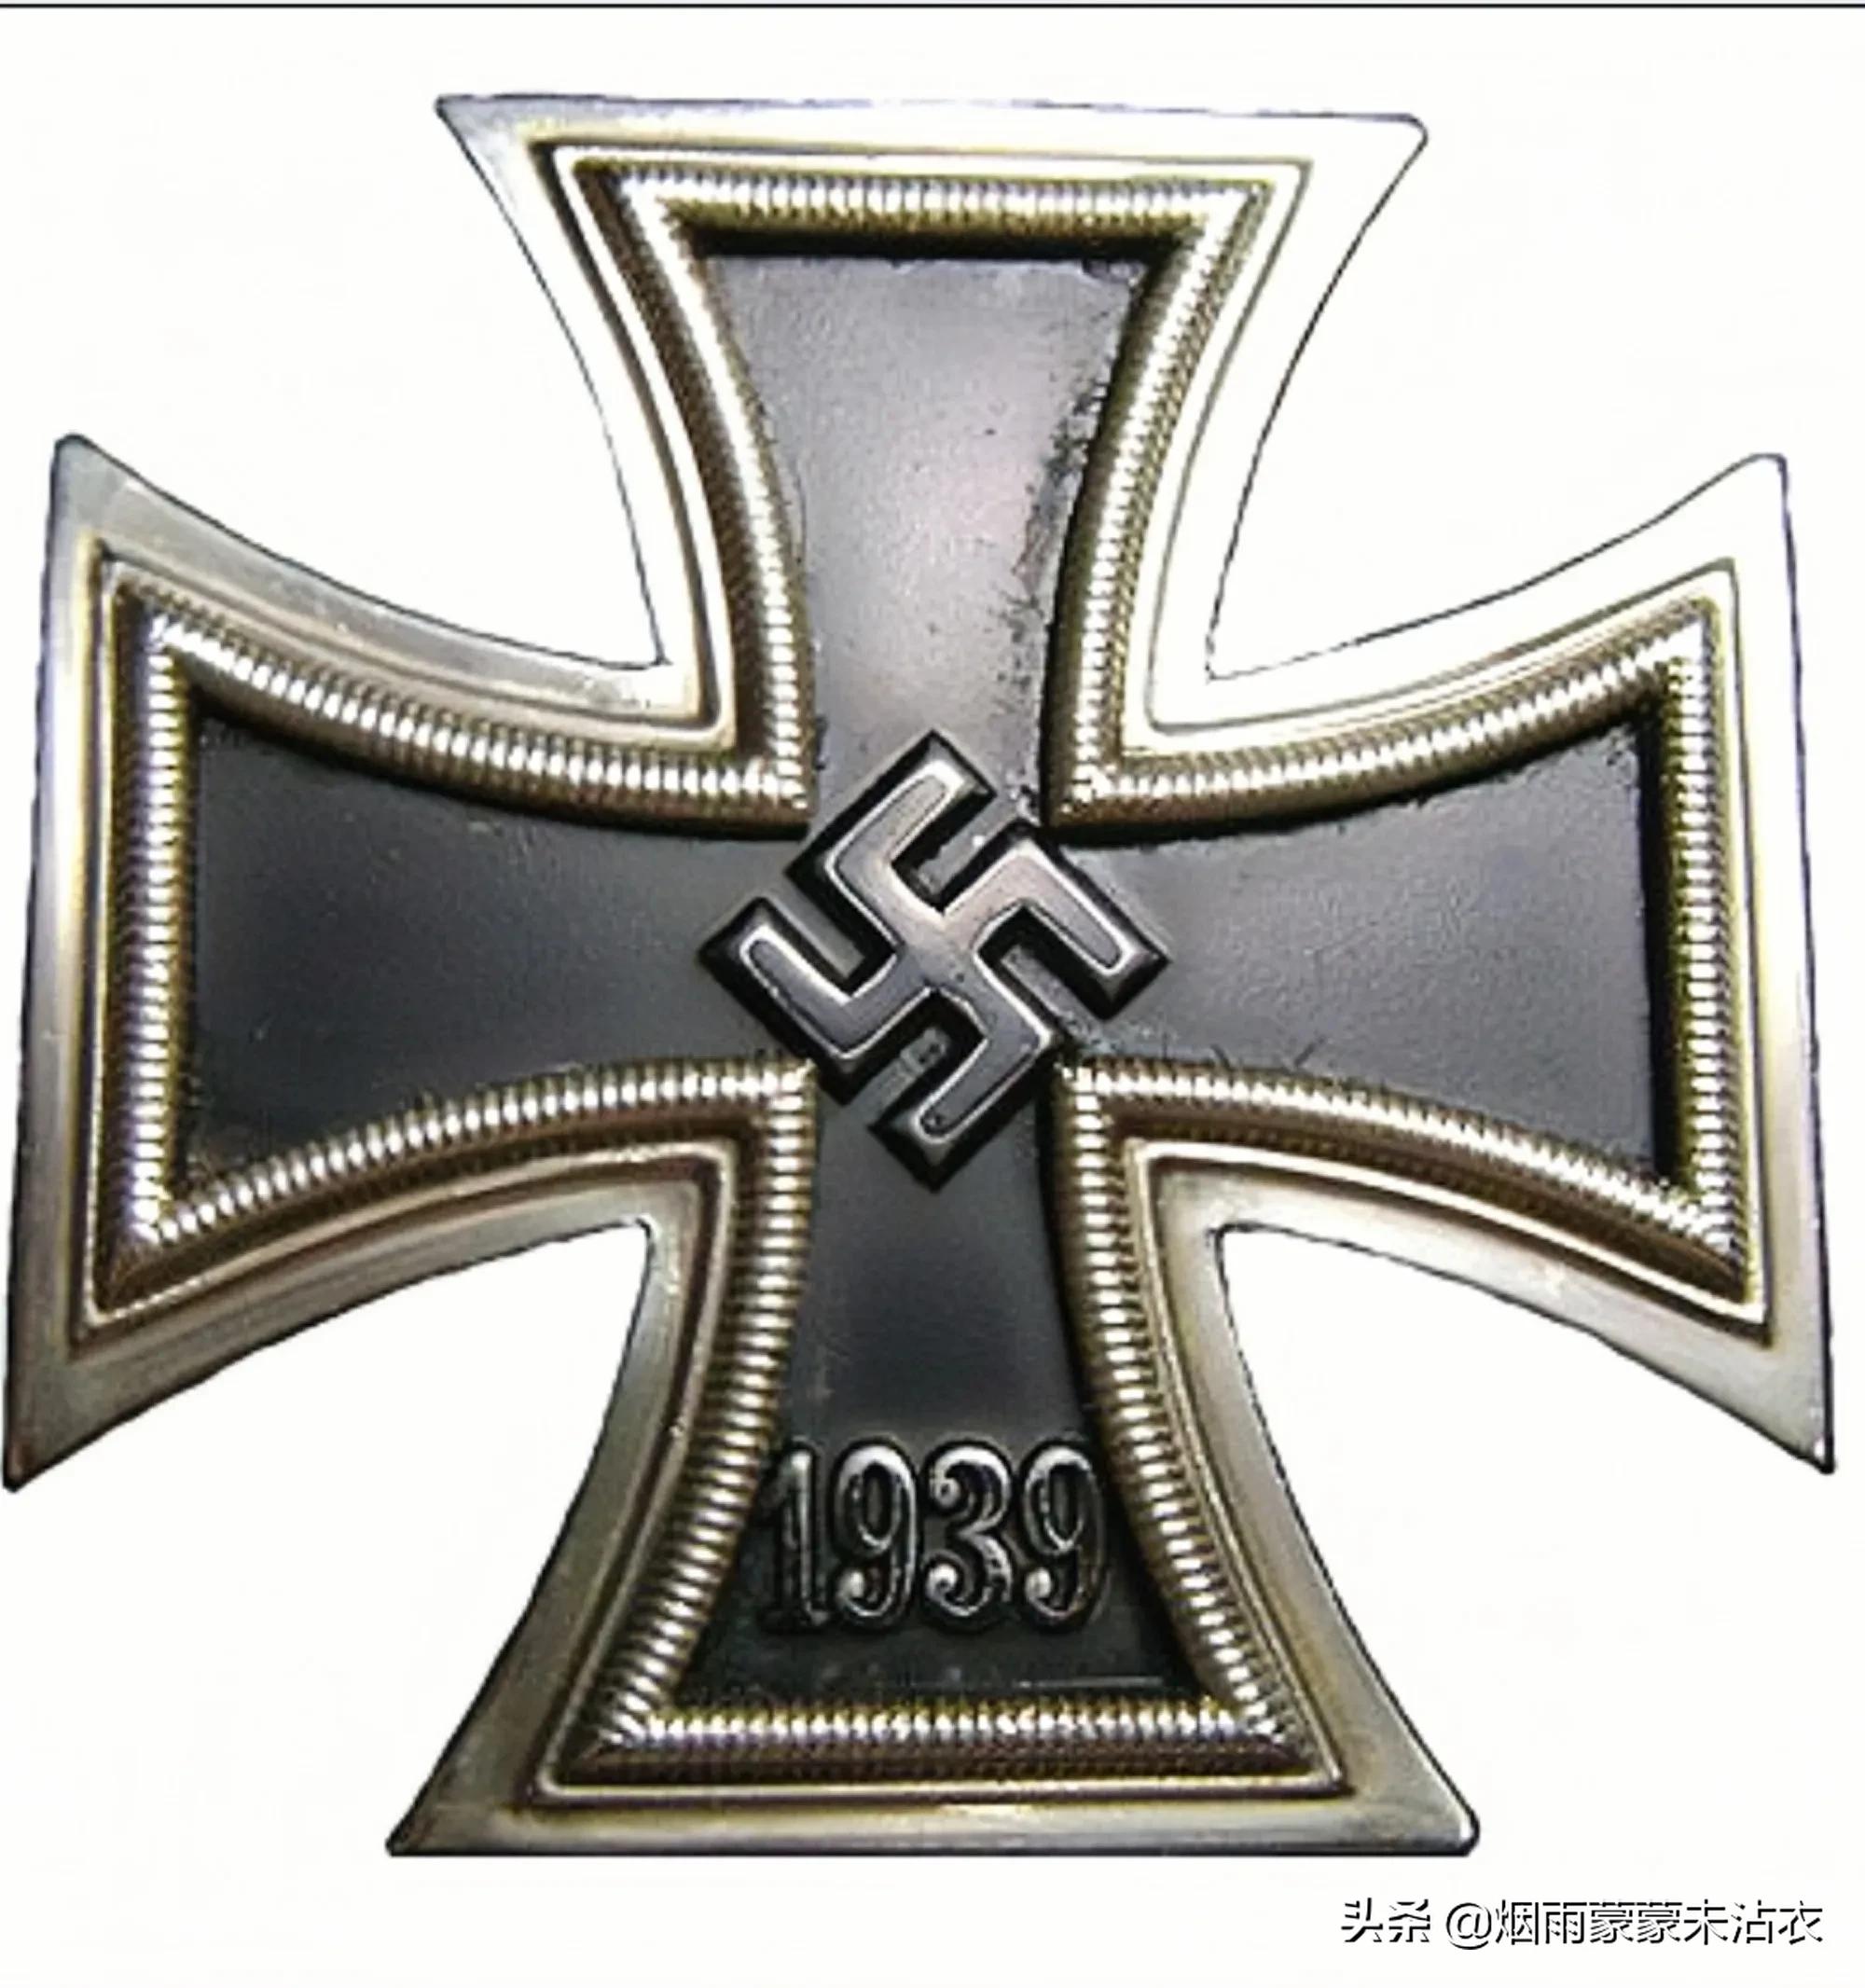 图文详解二战德国铁十字勋章的等级,佩戴方式及相关勋章